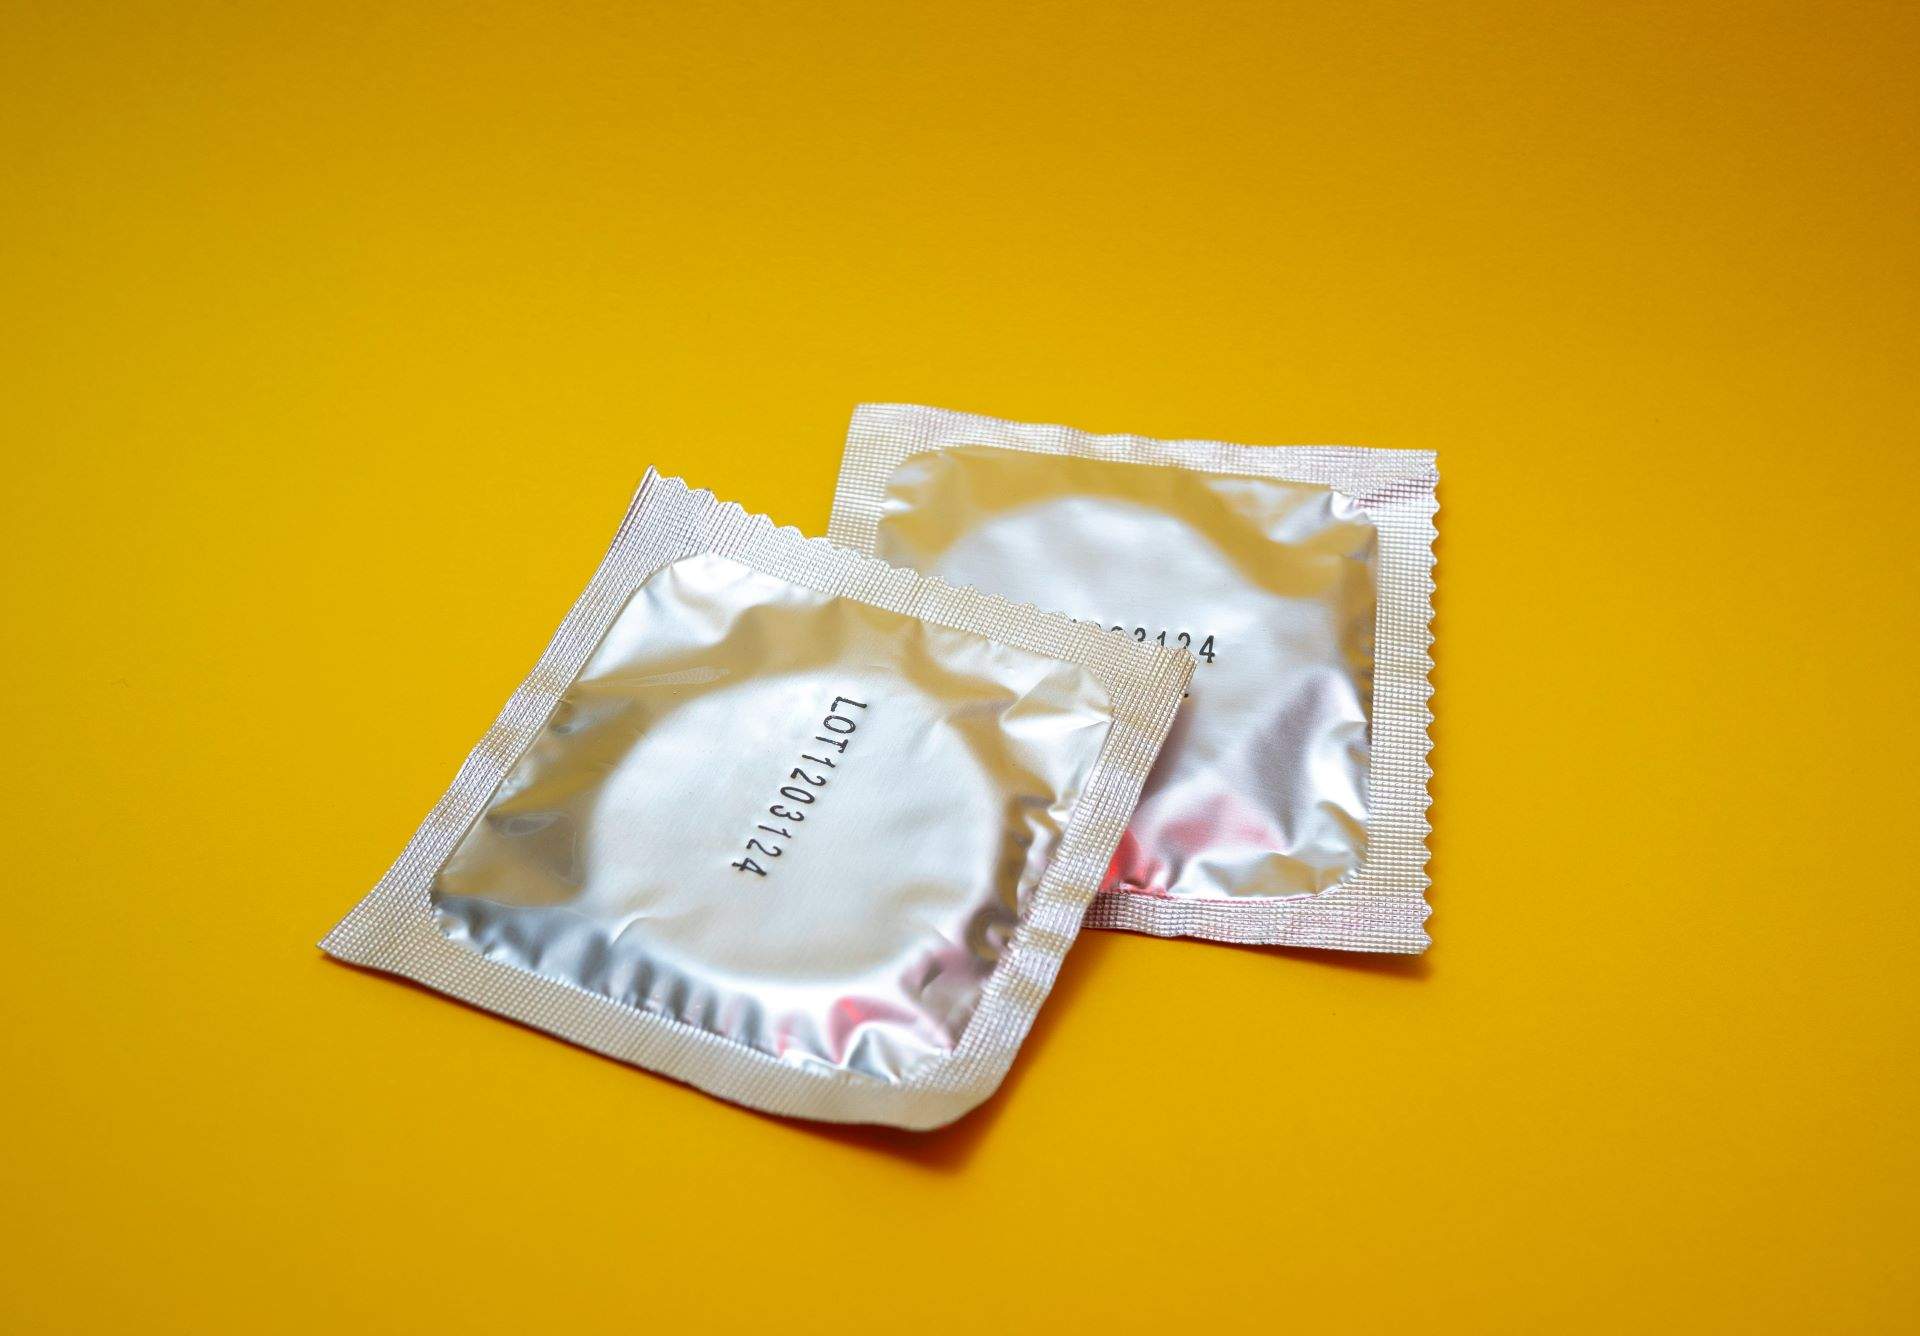 Sanidad estudia repartir preservativos gratuitos a los jóvenes para combatir el aumento de las ITS